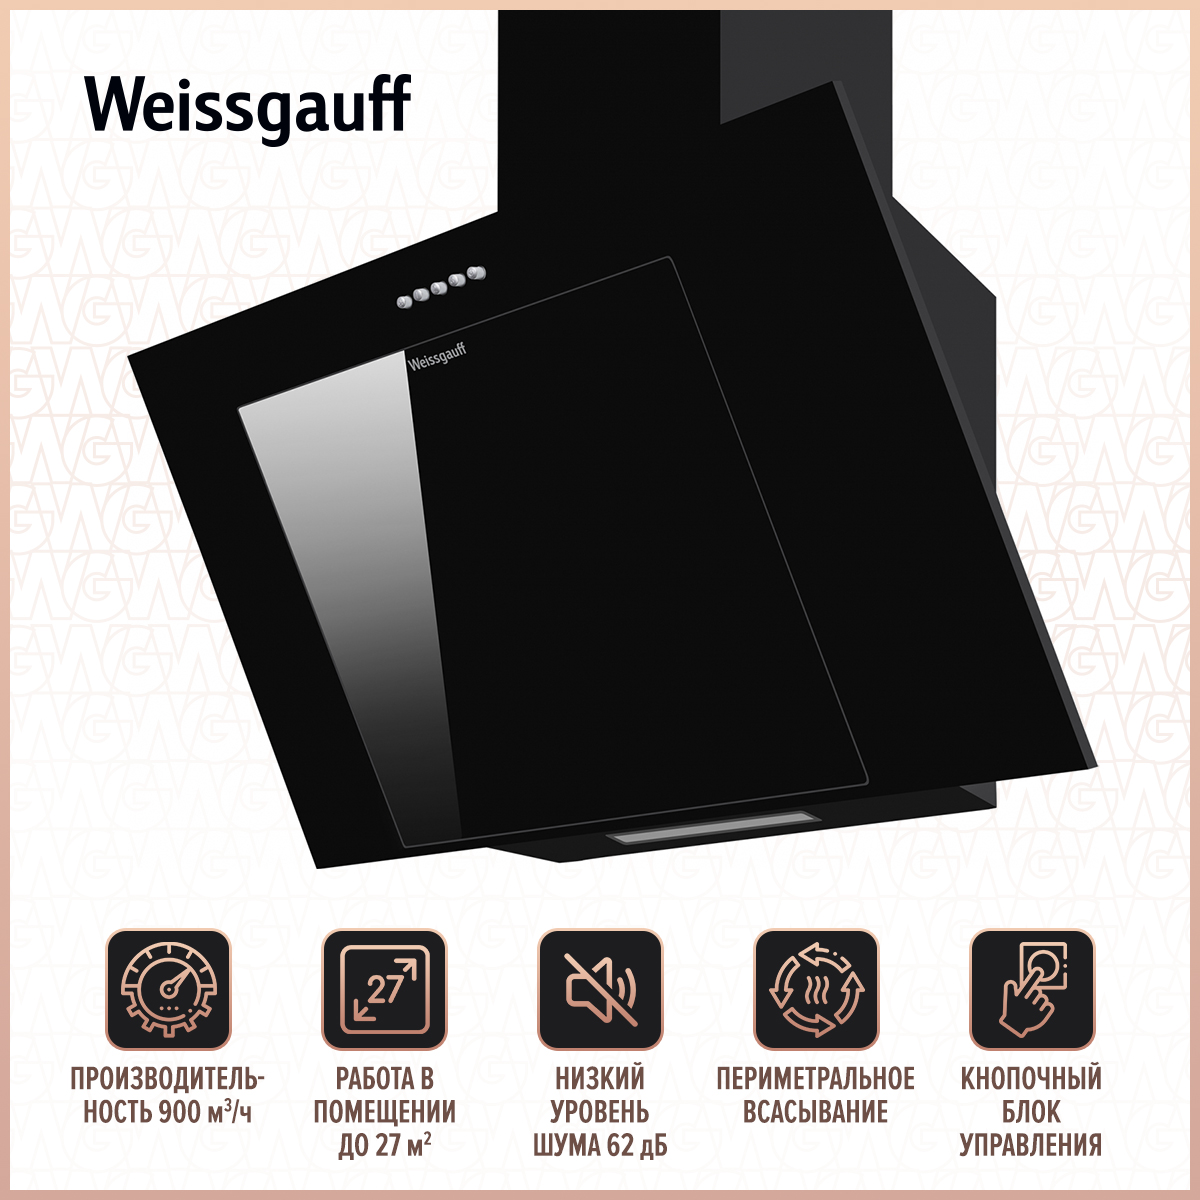 Вытяжка настенная Weissgauff Sigma 60 PB BL Black вытяжка встраиваемая weissgauff quadra 606 black